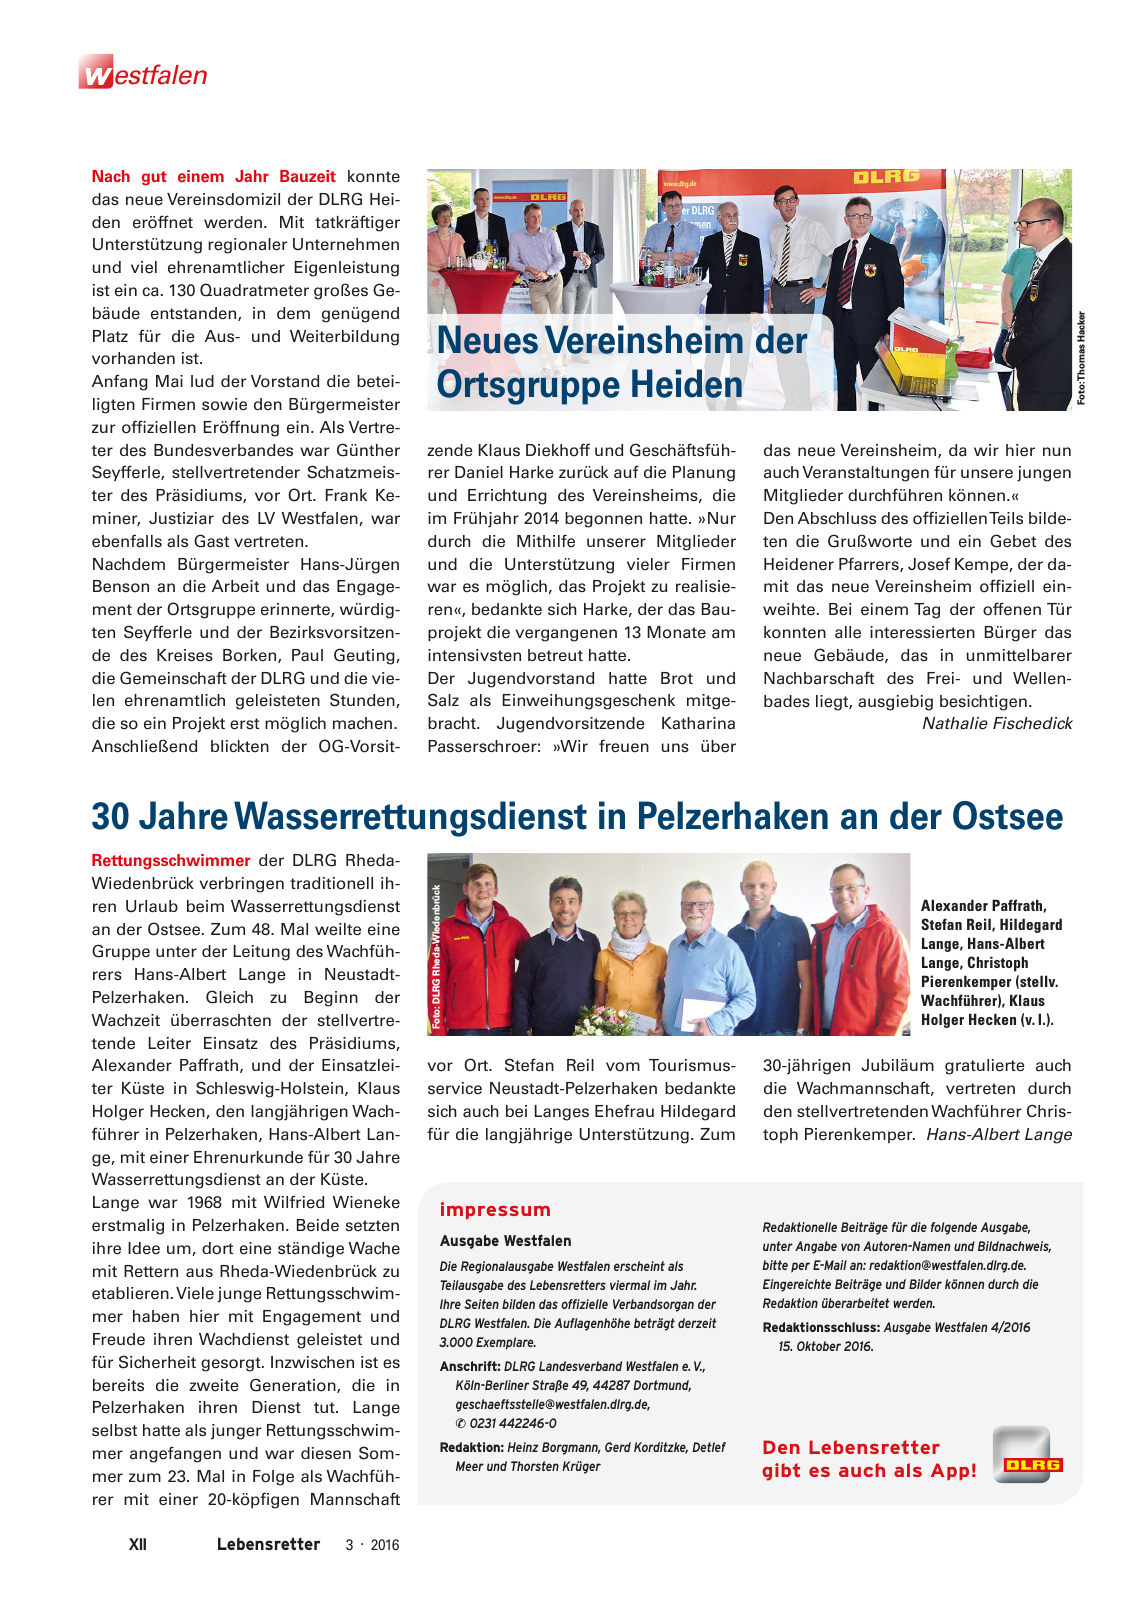 Vorschau Lebensretter 3/2016 - Regionalausgabe Westfalen Seite 14